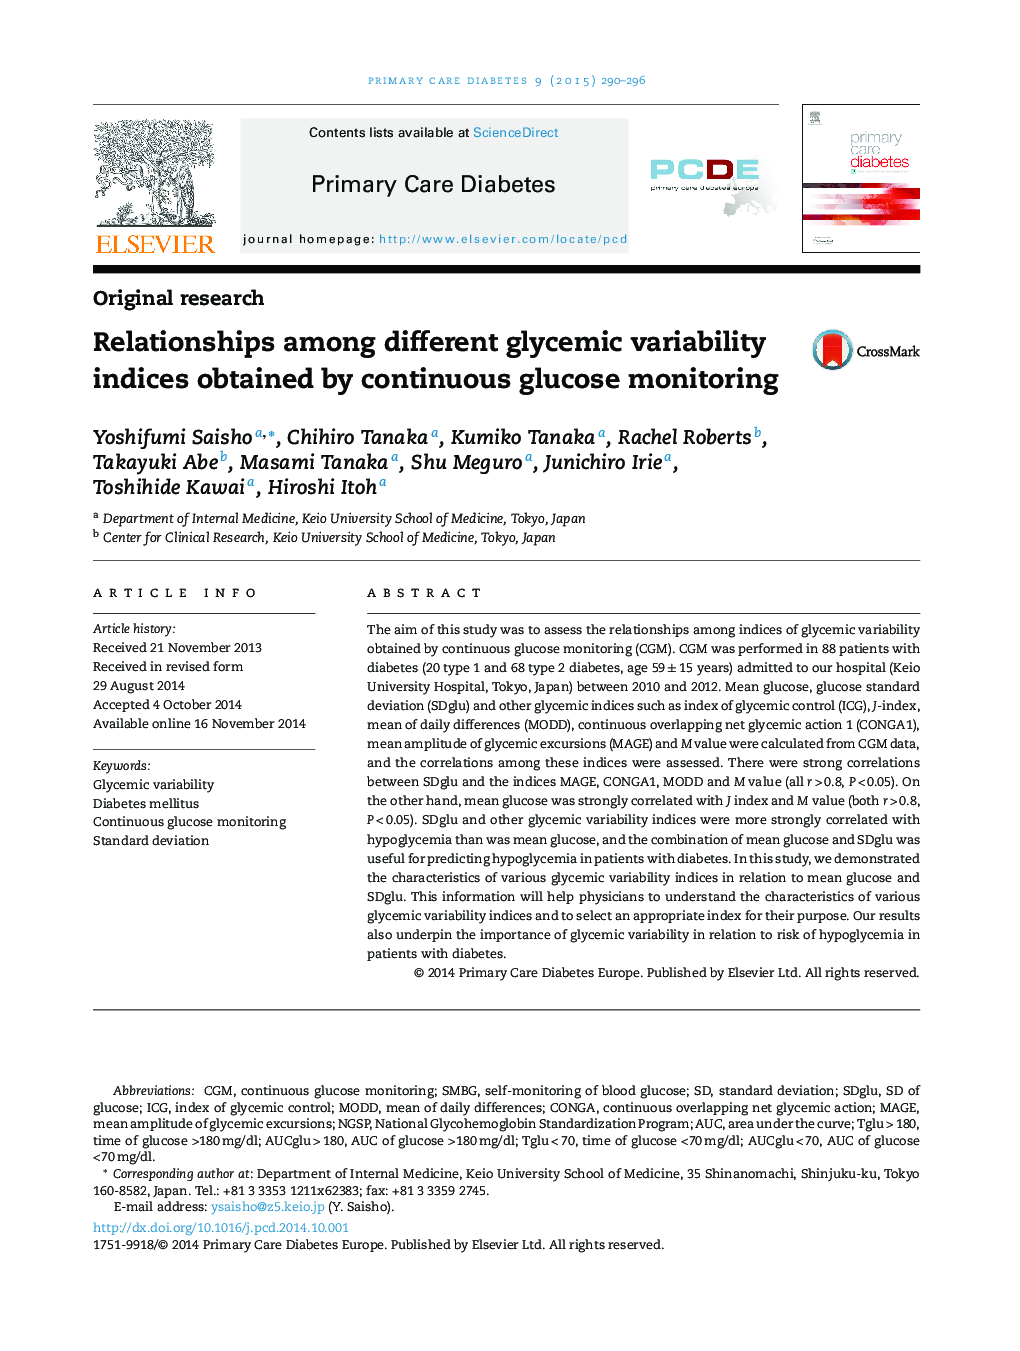 ارتباط بین شاخص های متغیر گلیسمی مختلف با استفاده از نظارت مستمر بر گلوکز